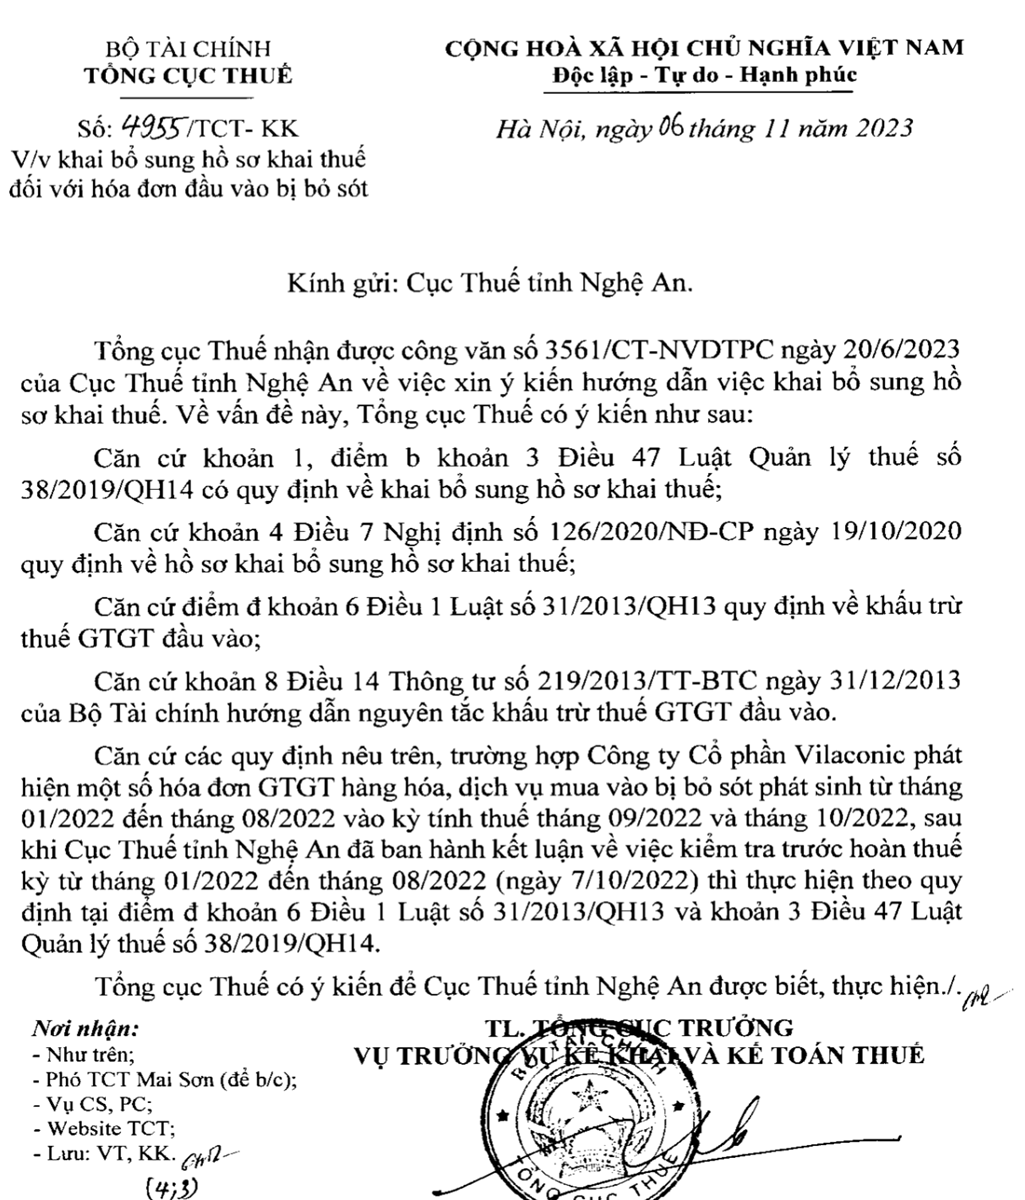 công văn số 4955/TCT-KK ngày 6/11/2023 của Tổng cục Thuế